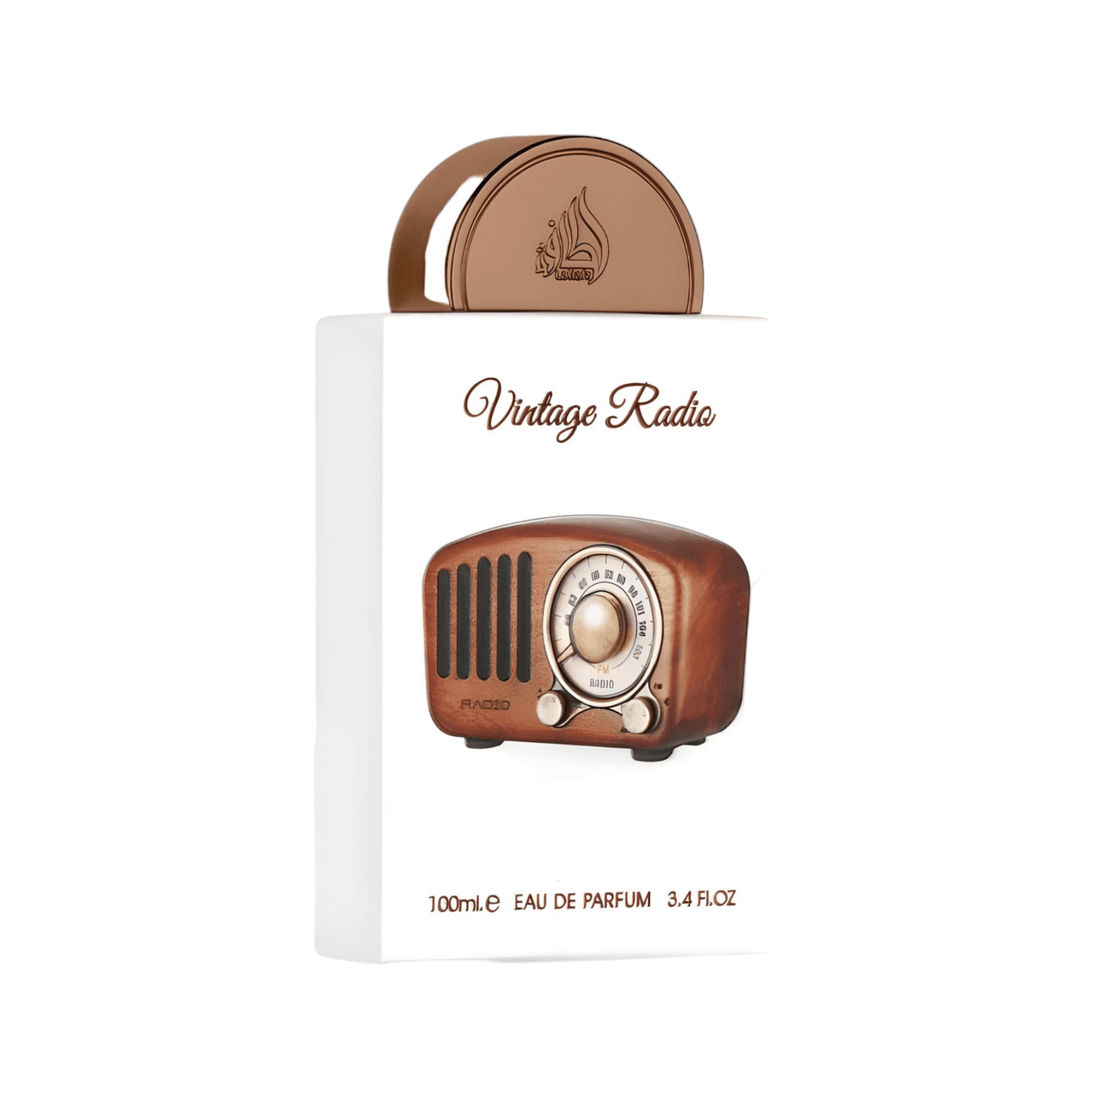 Classic 100ml bottle of Vintage Radio Perfume by Lattafa Pride, symbolizing its nostalgic and elegant fragrance.